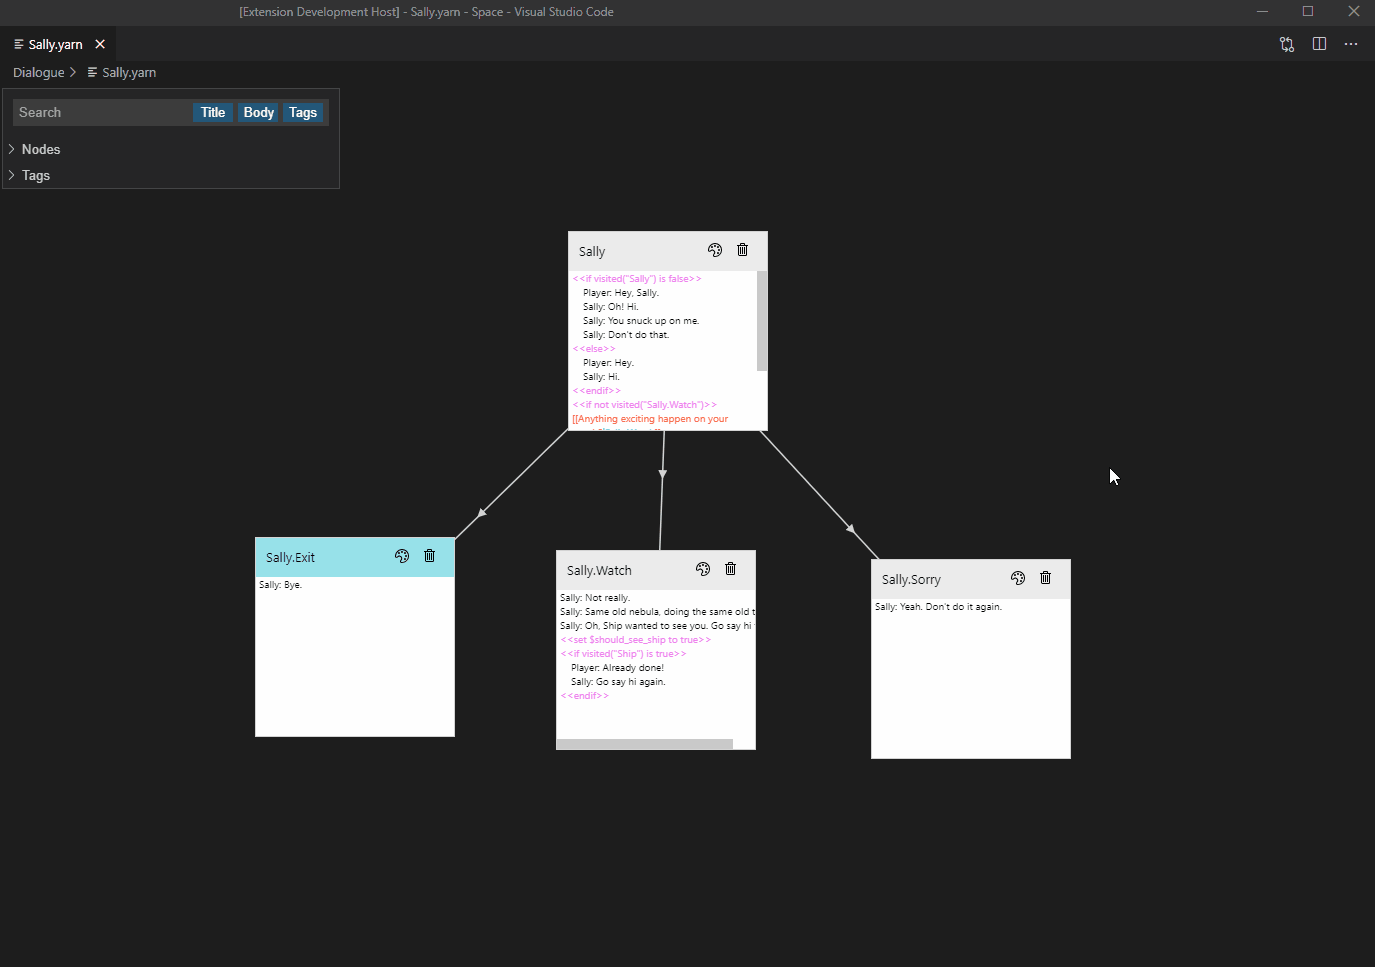 Demo of adding a new node